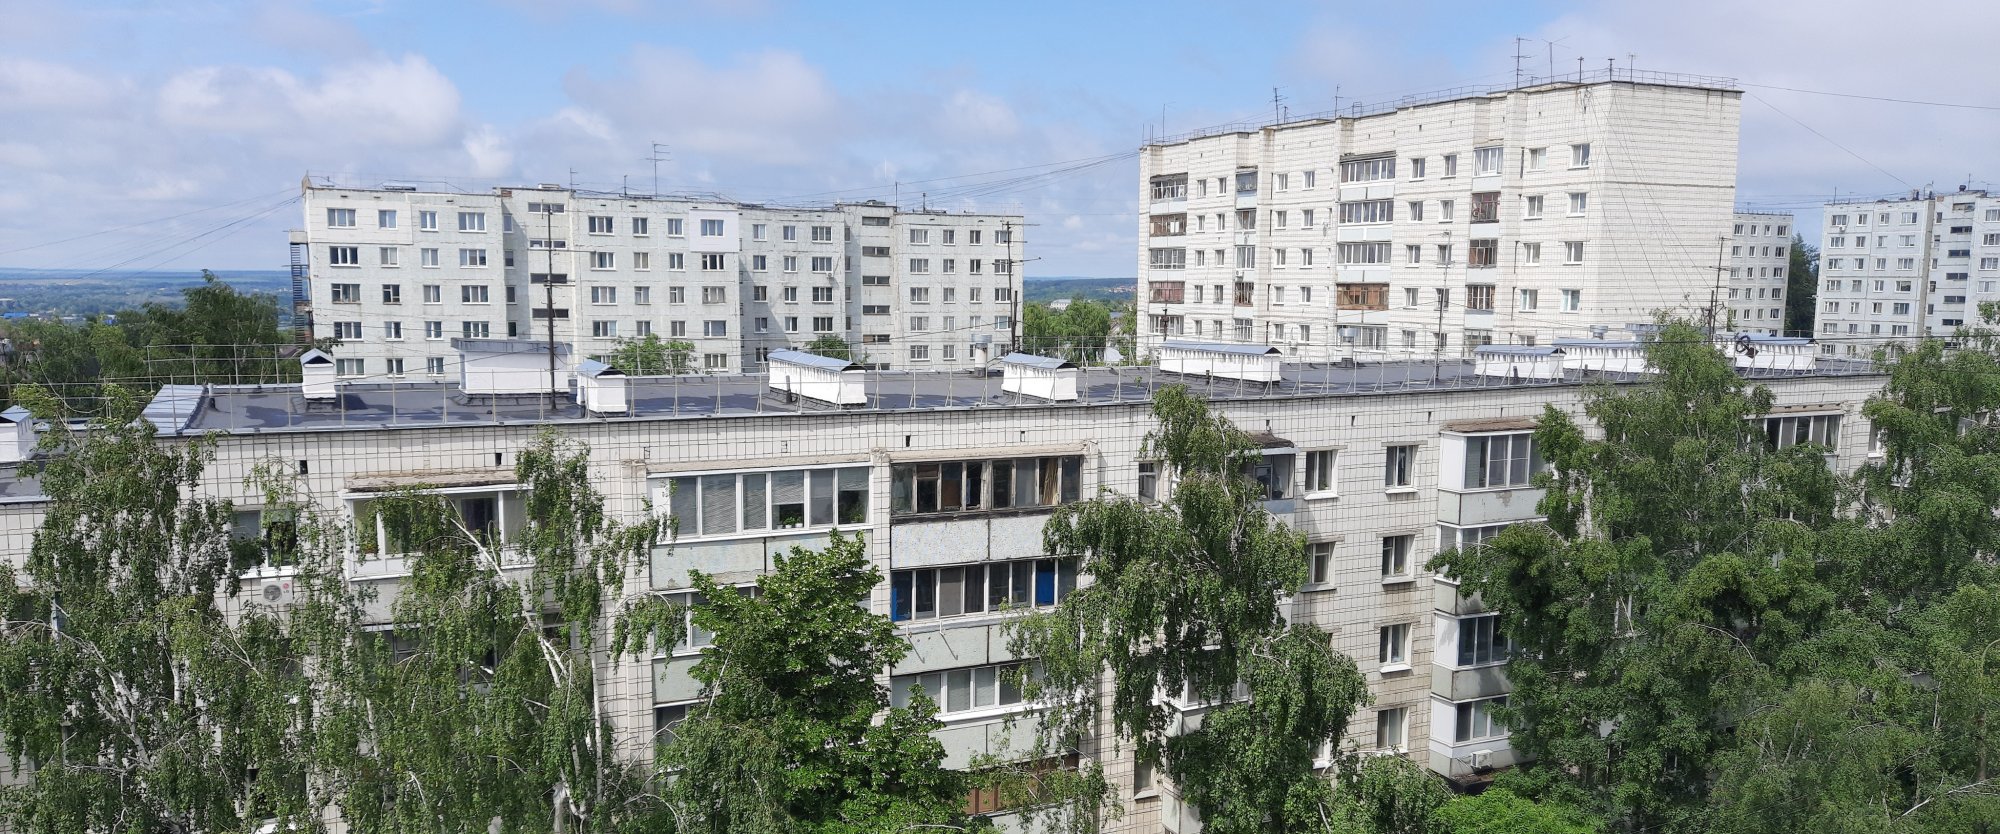 В региональную программу капитального ремонта Ульяновской области внесены изменения